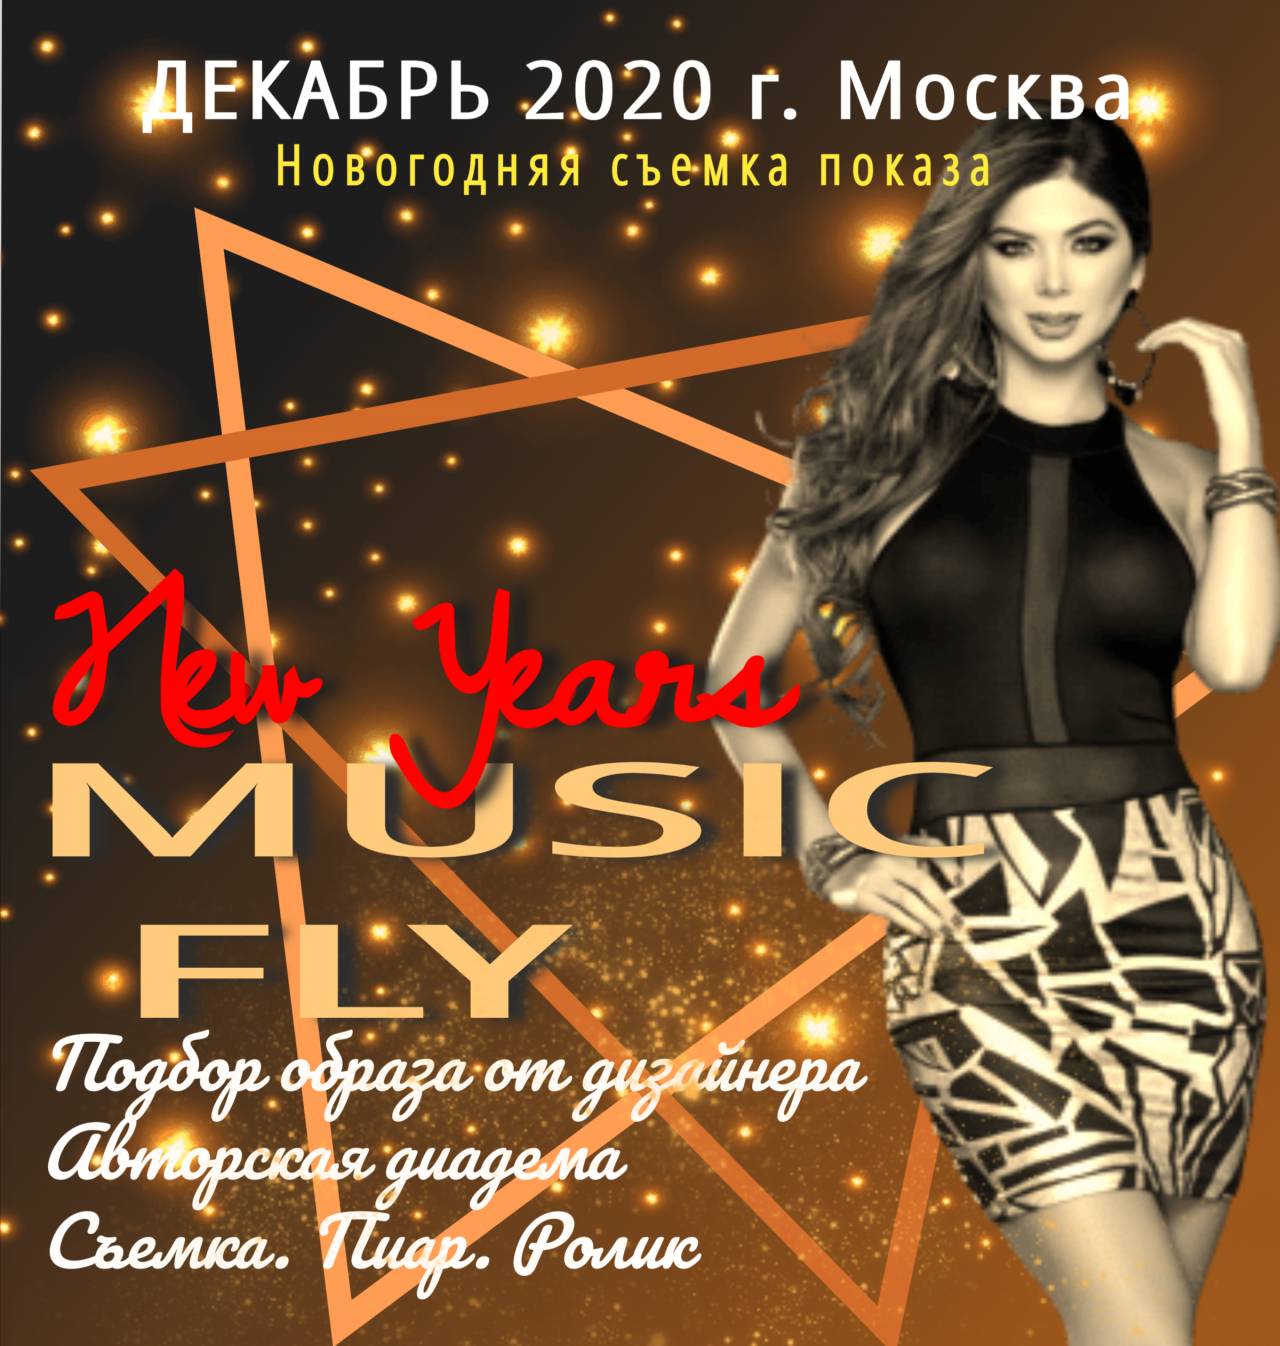 Cъёмка Новогоднего концерта "MUSIC FLY " ПОКАЗ ОТ ДИЗАЙНЕРА 17.12.2020 года 